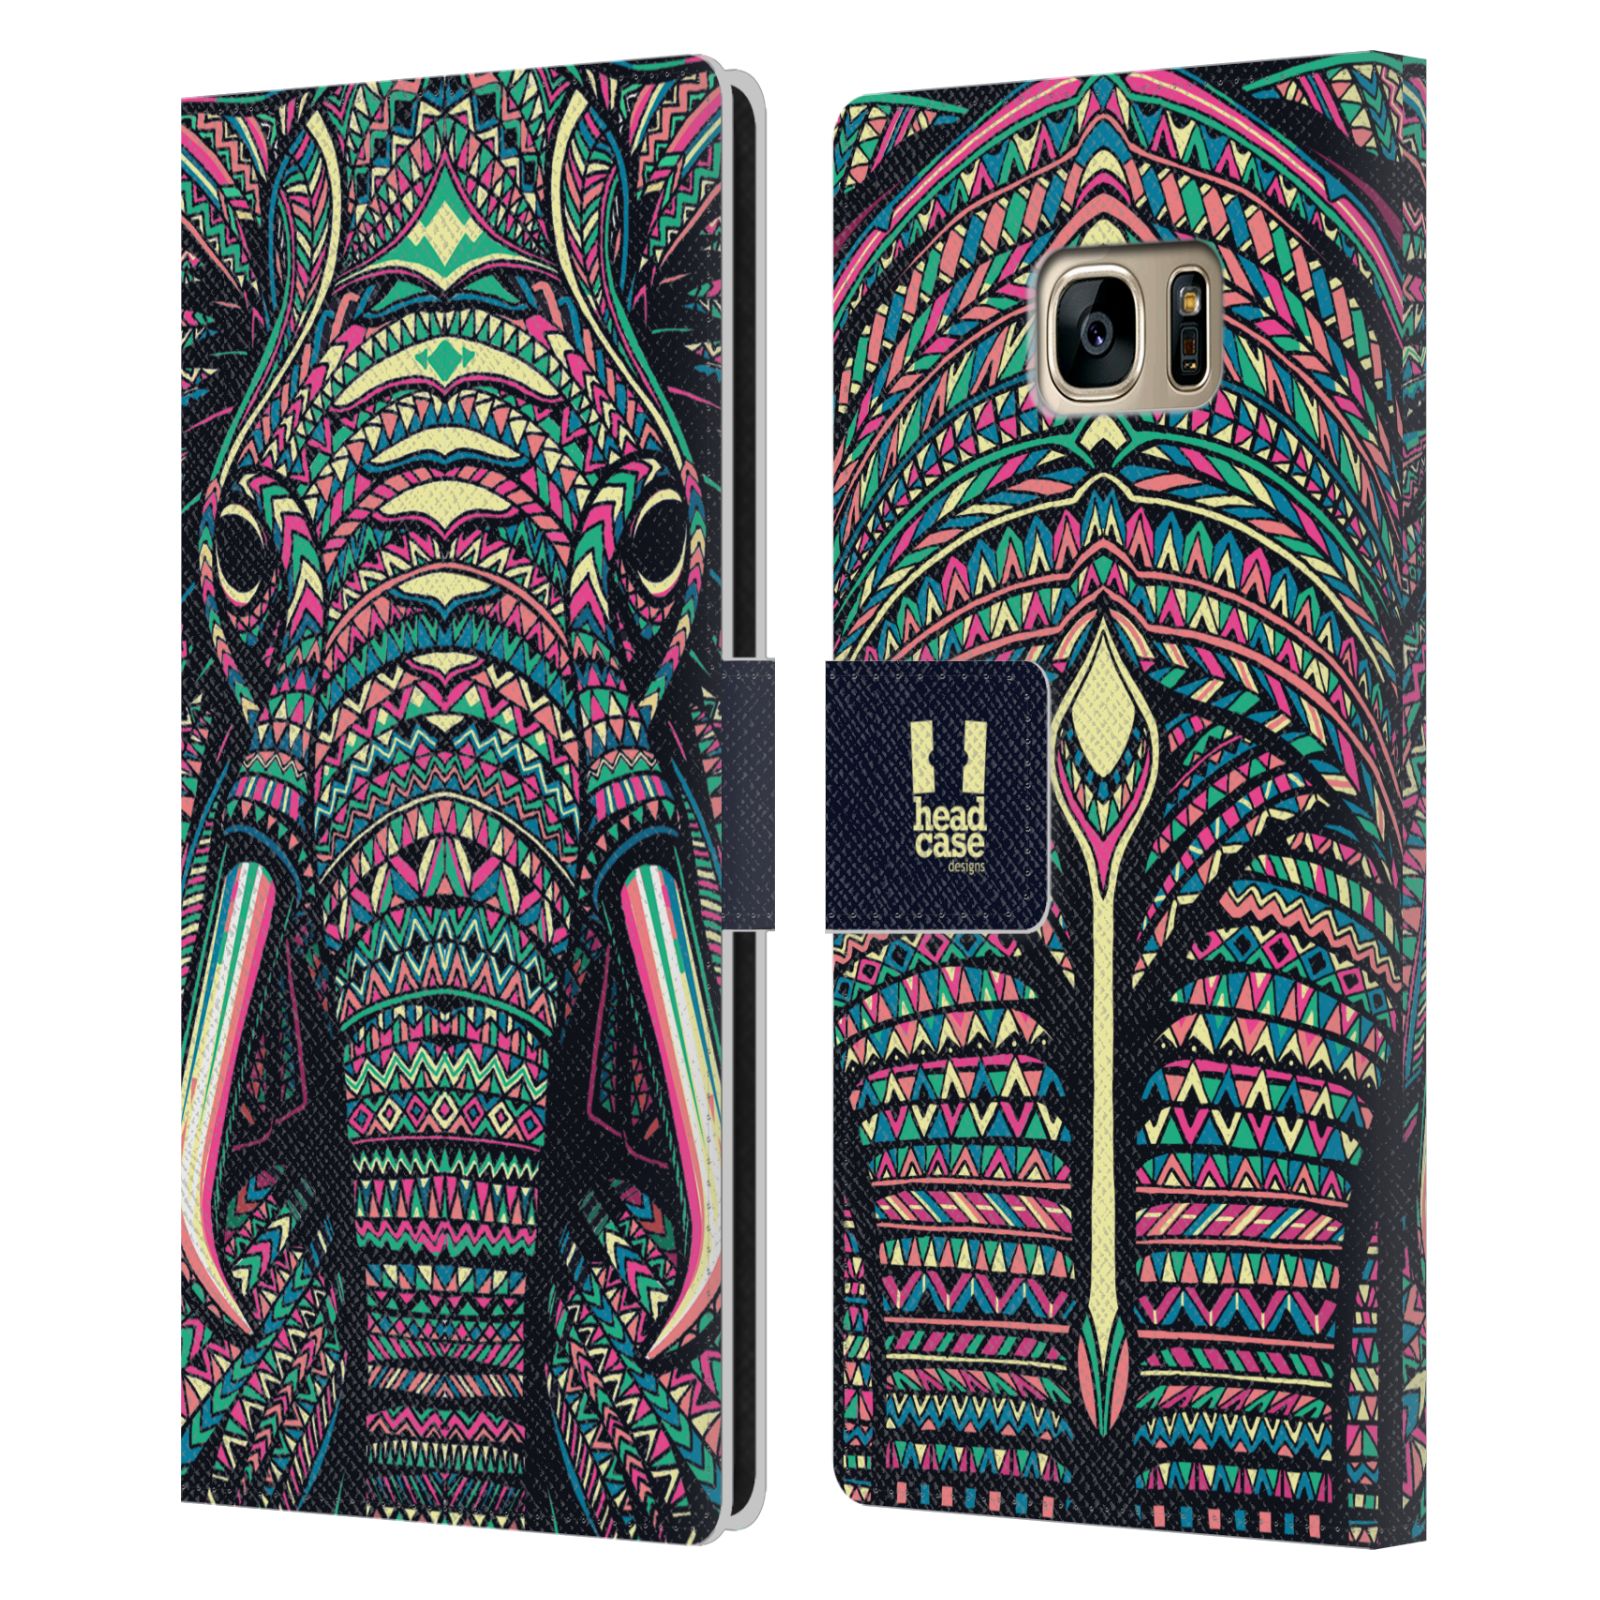 Pouzdro pro mobil Samsung Galaxy S7 EDGE - Aztécký motiv slon